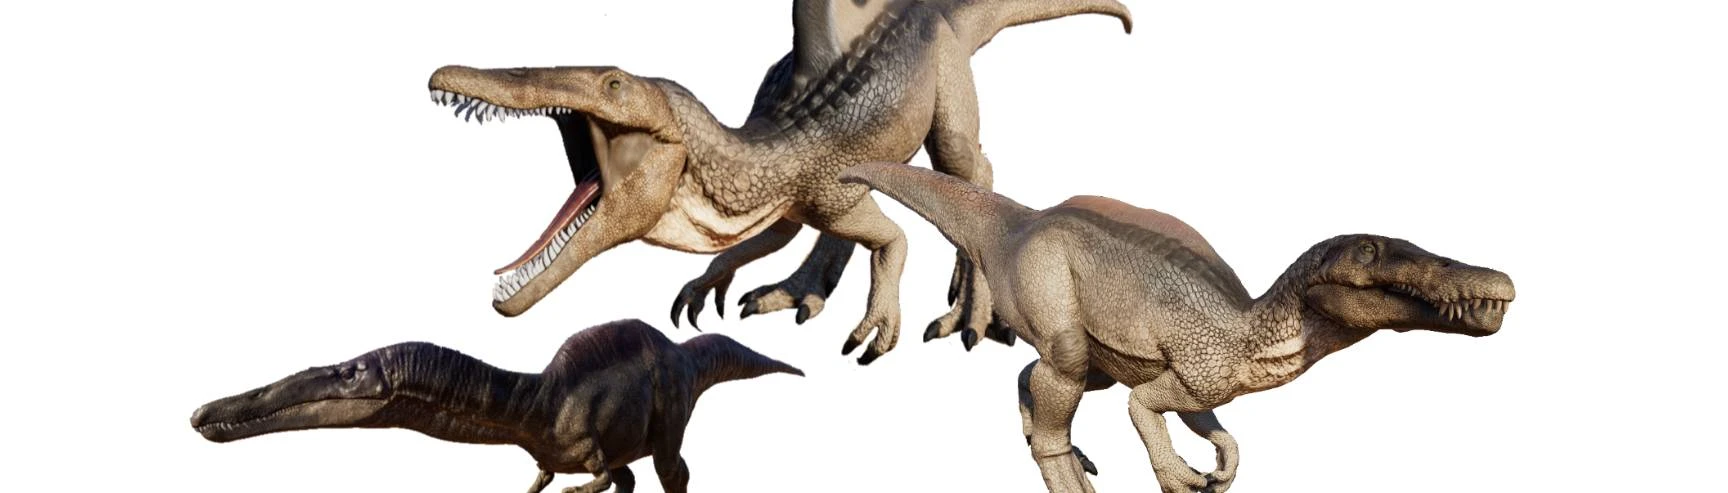 Spinosaurids Dinosaur Pack (3 New Species) at Jurassic World Evolution ...